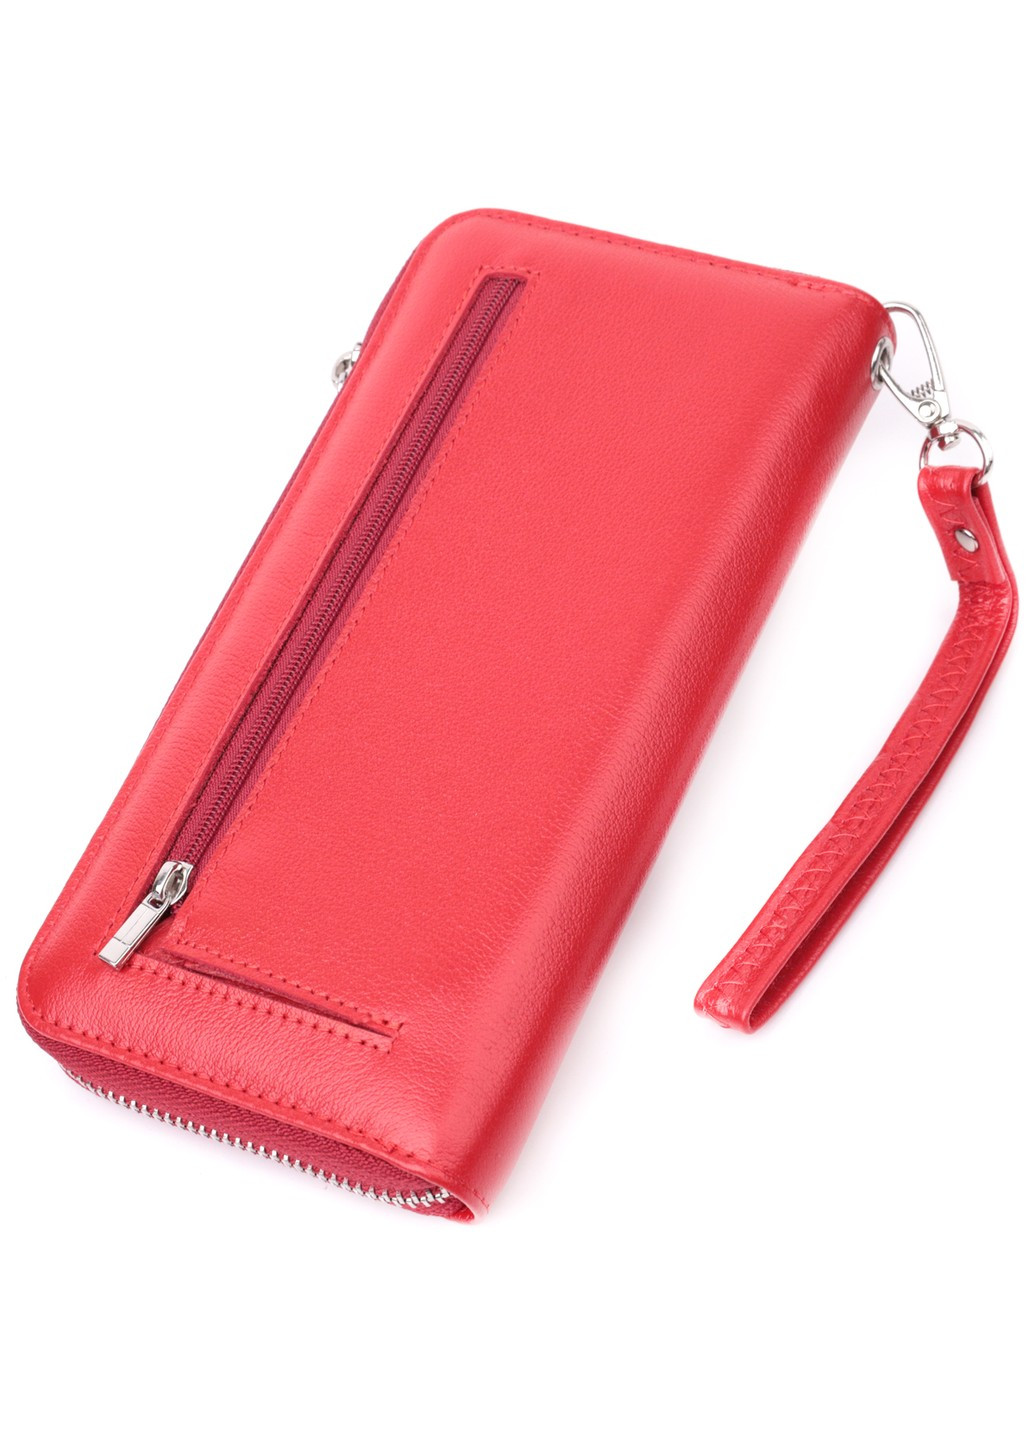 Стильный кошелек-клатч для женщин на одно отделение из натуральной кожи 22561 Красный st leather (277980540)